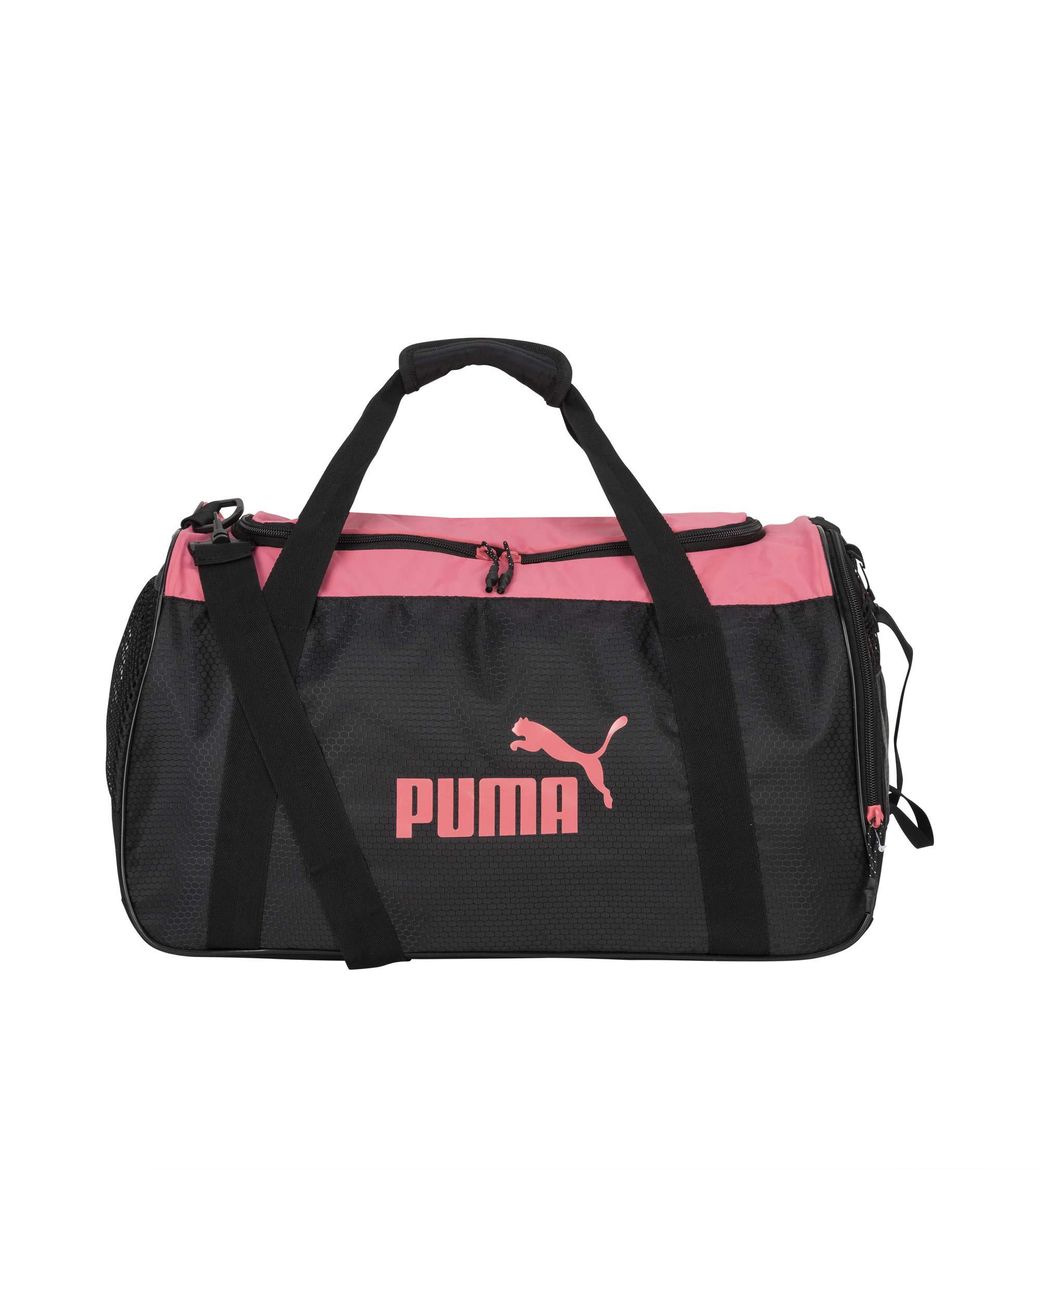 PUMA Defense Duffel Bag in Black | Lyst